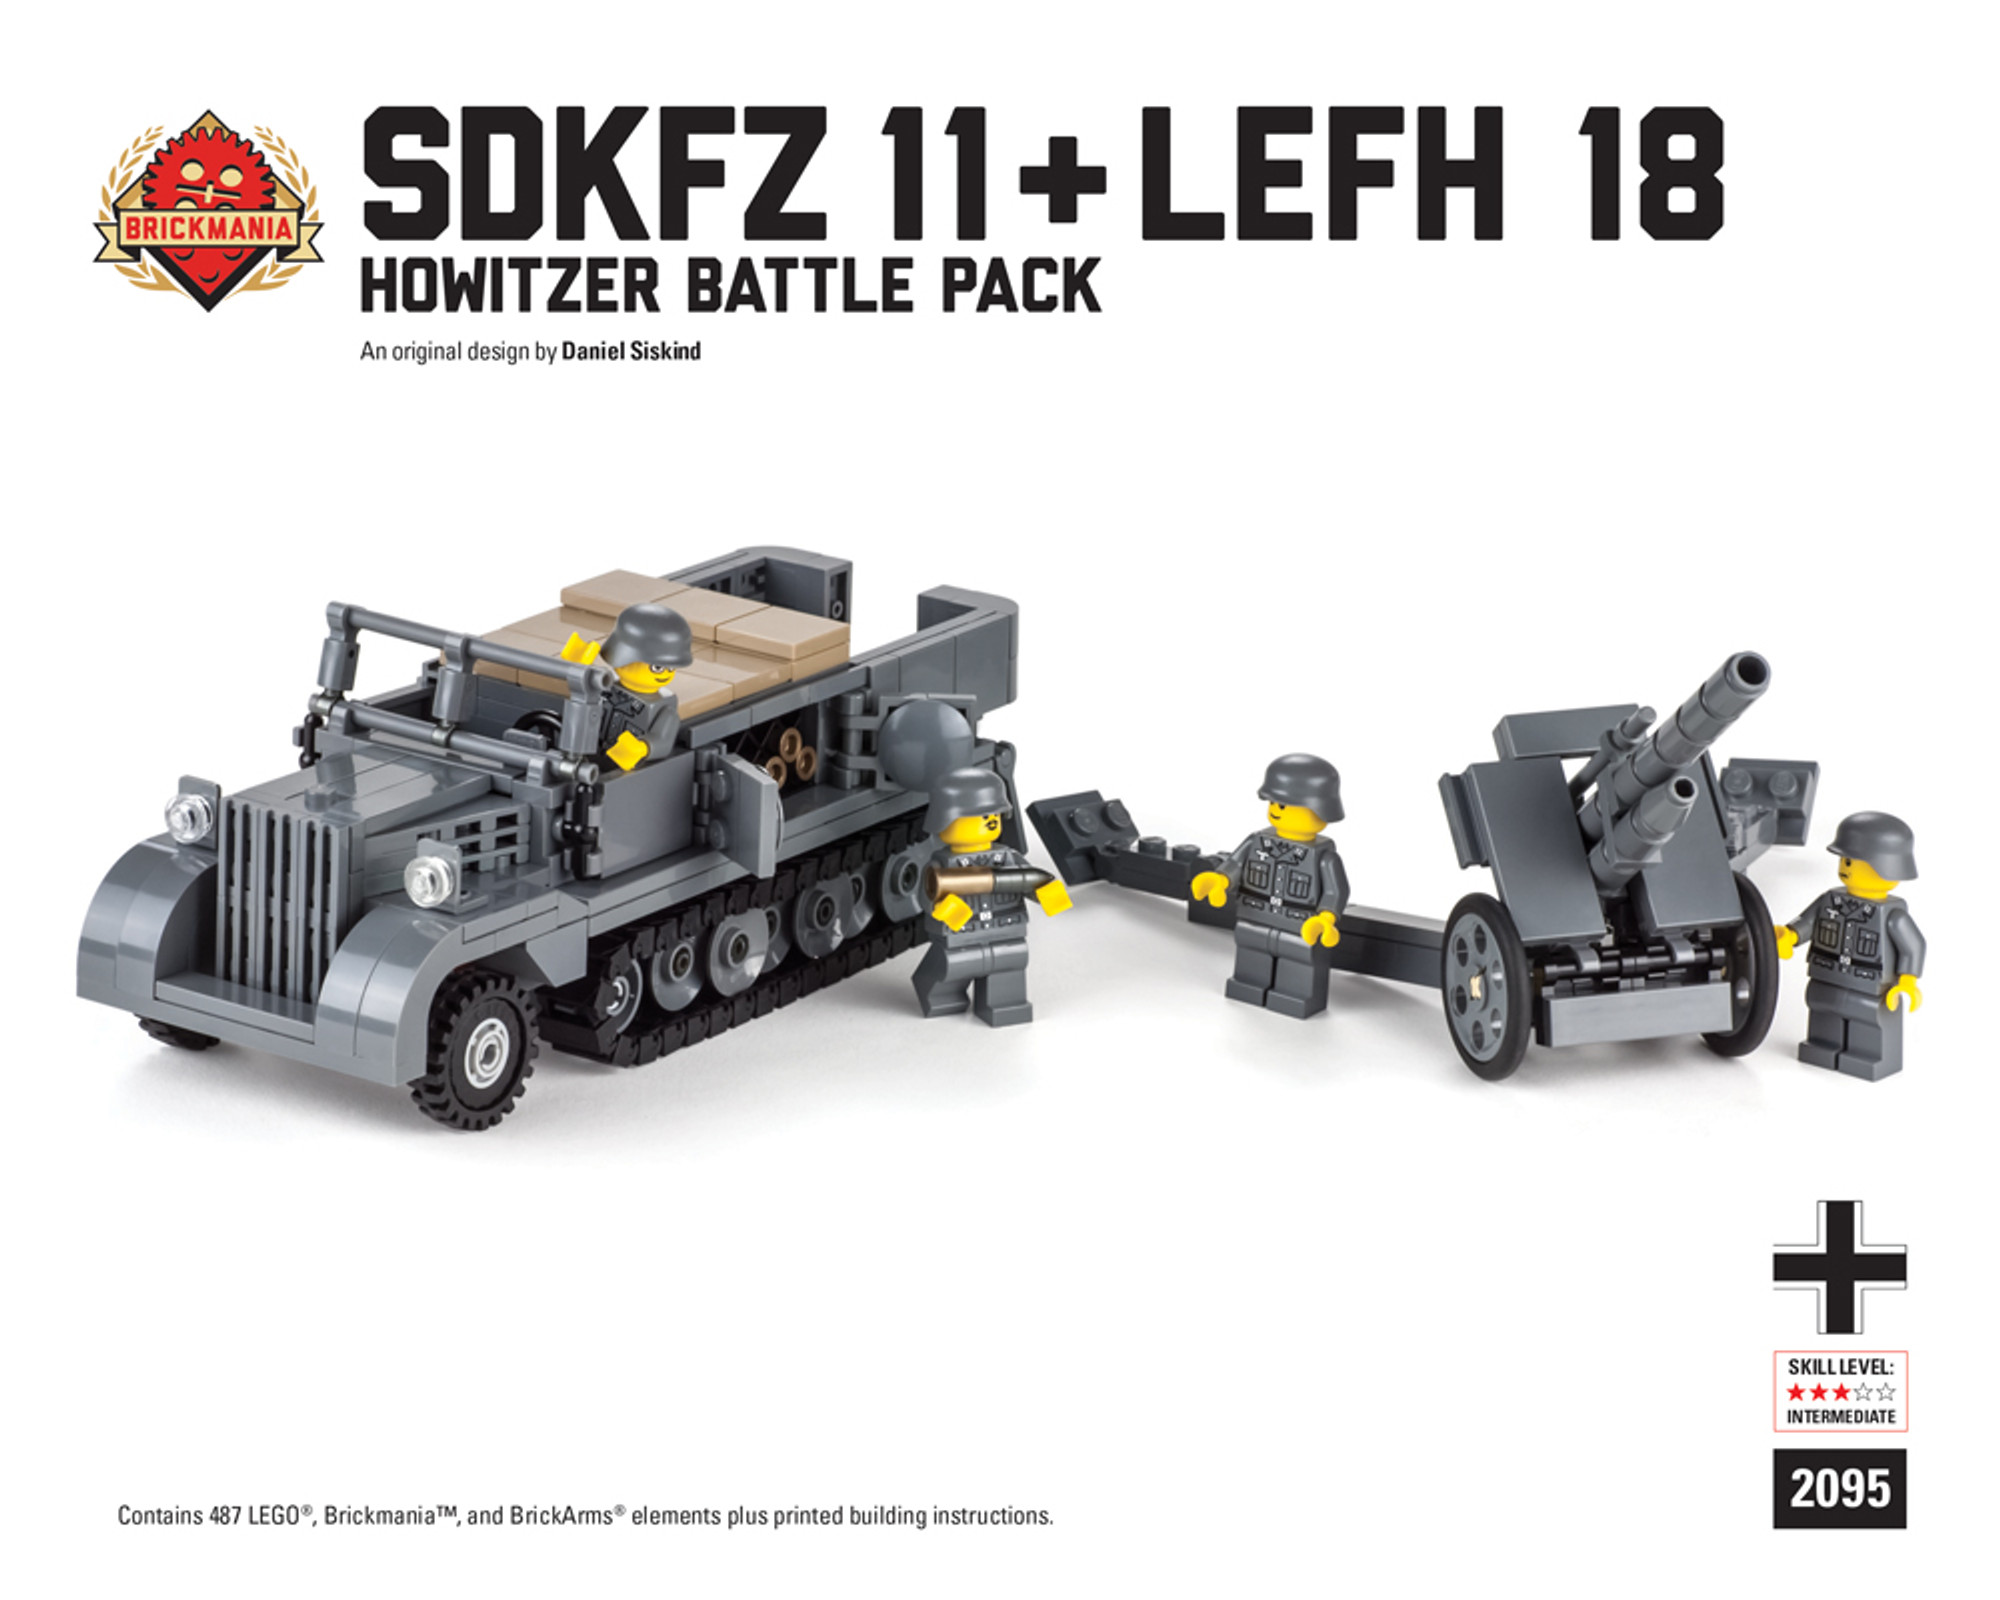 SdKfz 11 + LeFH Battle Pack